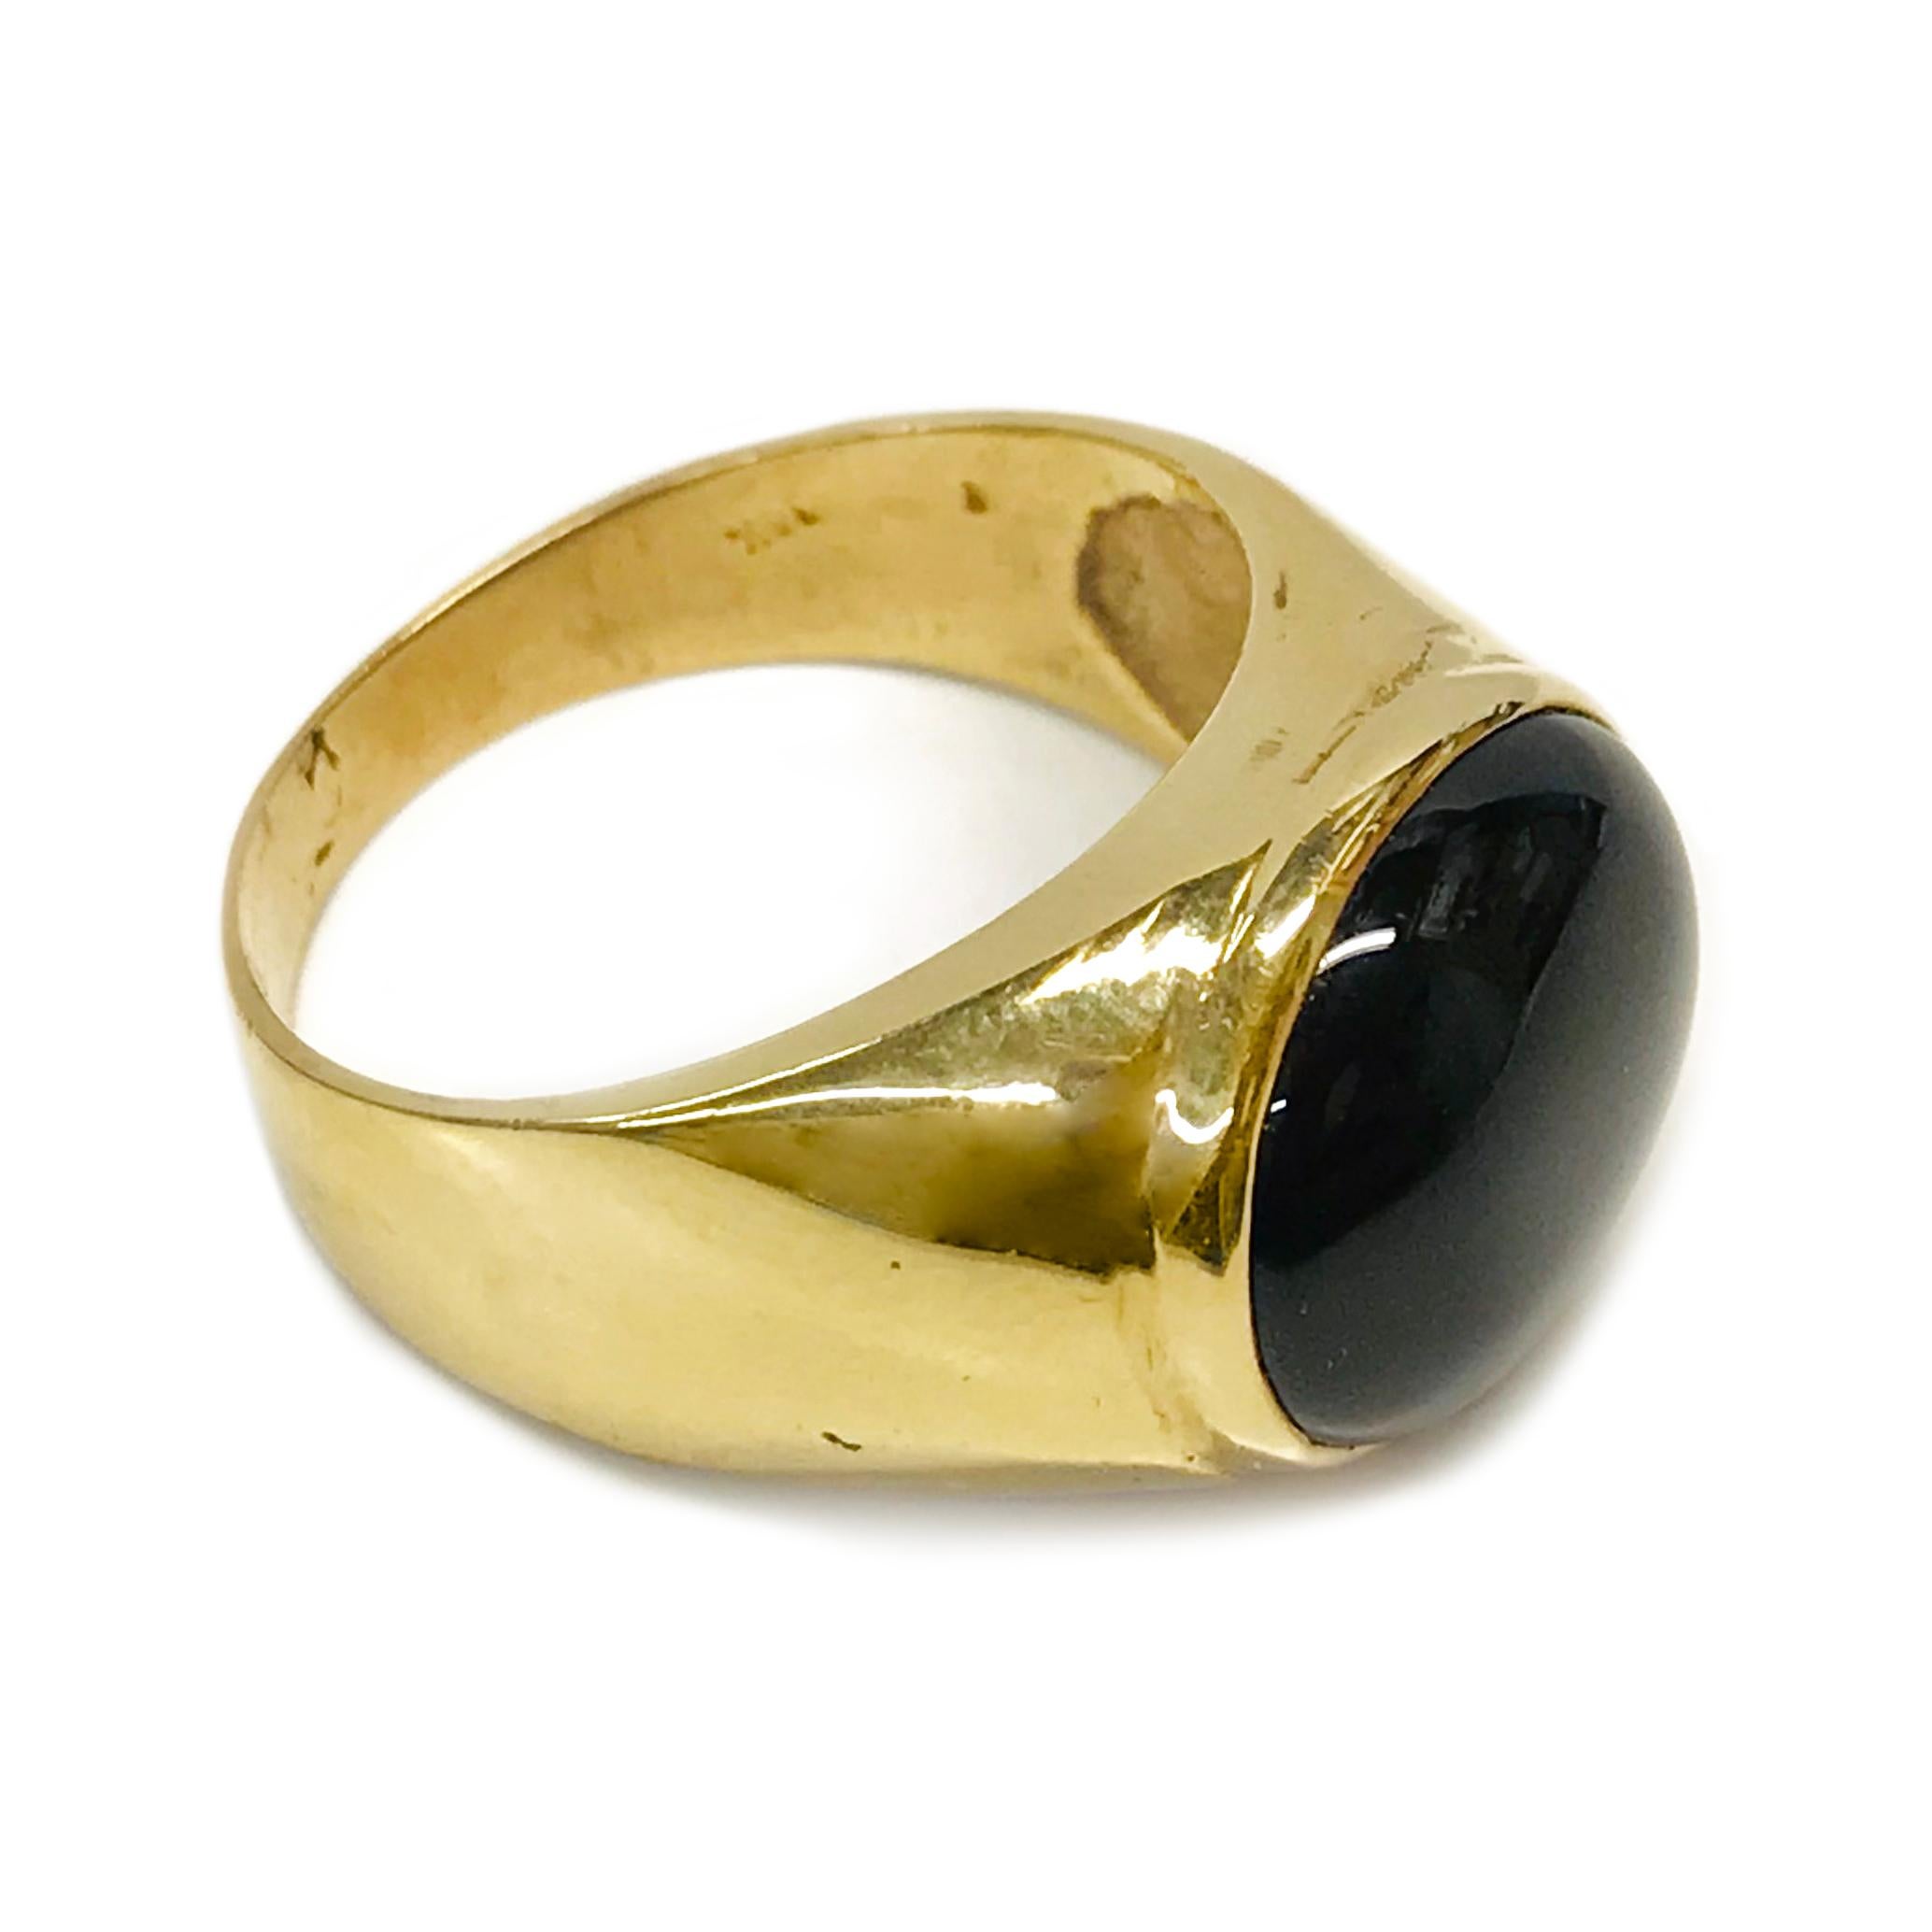 14 Karat Schwarzer Onyx Cabochon Ring. Der Ring ist mit einem ovalen schwarzen Onyx in Lünettenfassung versehen. Der Onyxstein misst 13mm x 11mm und die Ringgröße ist 8 3/4. Der Ring hat eine glatte glänzende Oberfläche auf dem verjüngten Band. Auf